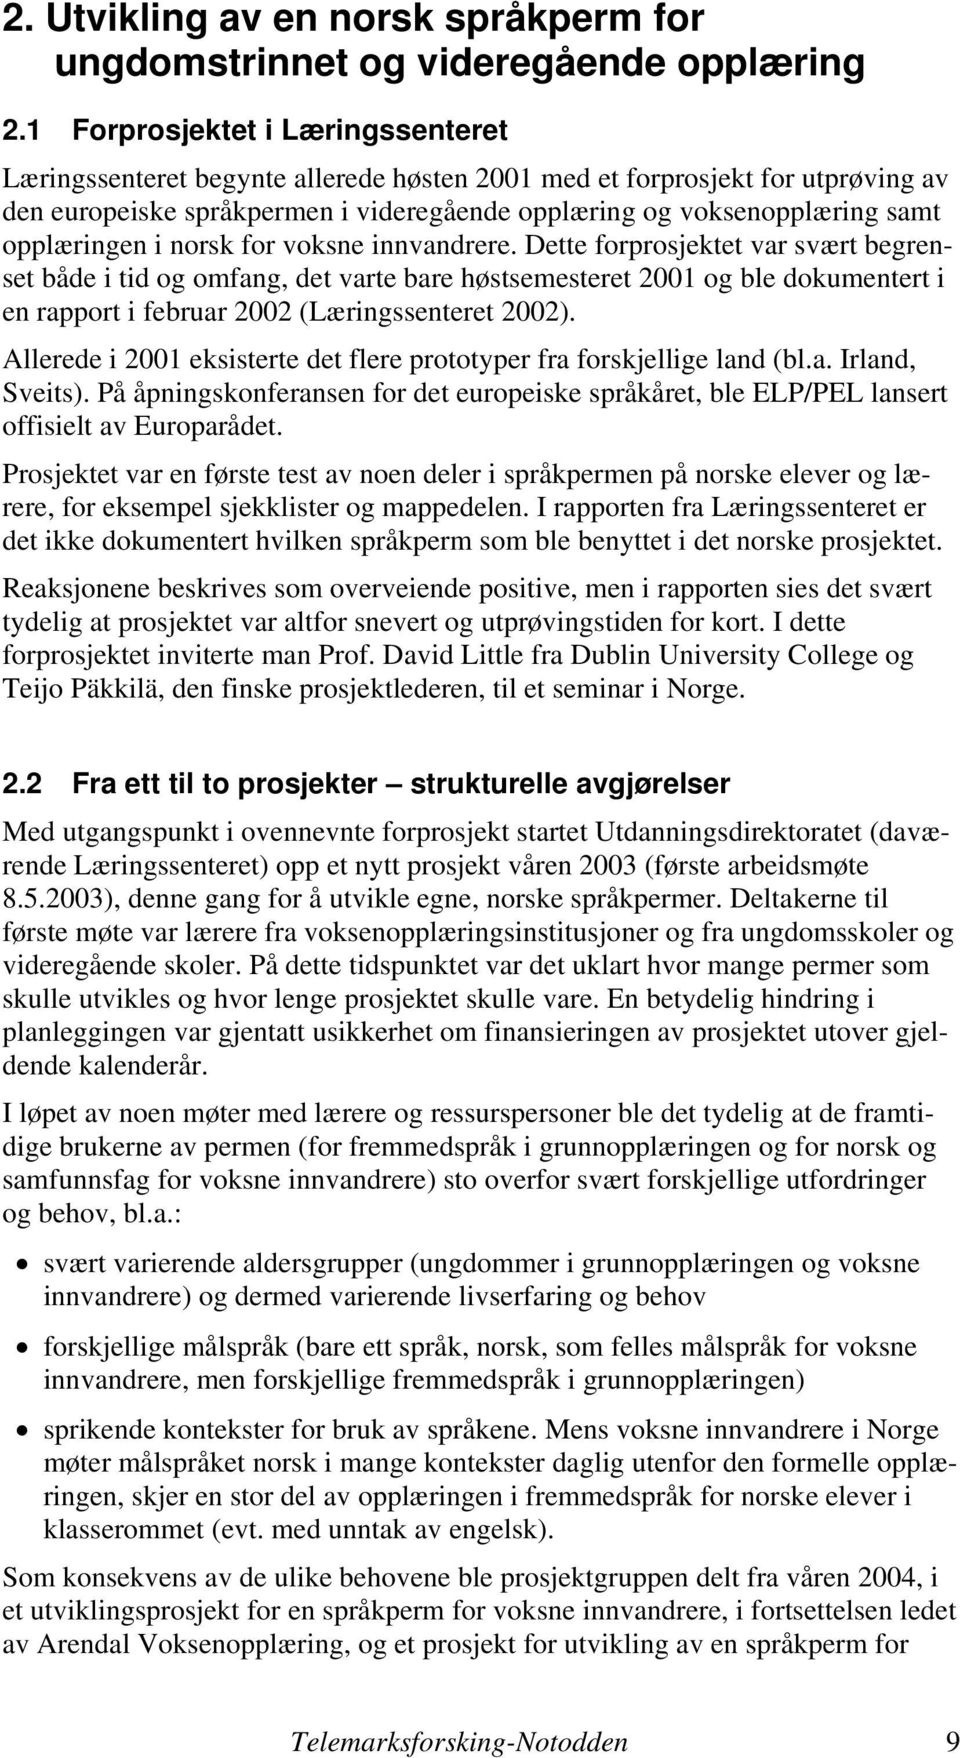 opplæringen i norsk for voksne innvandrere.